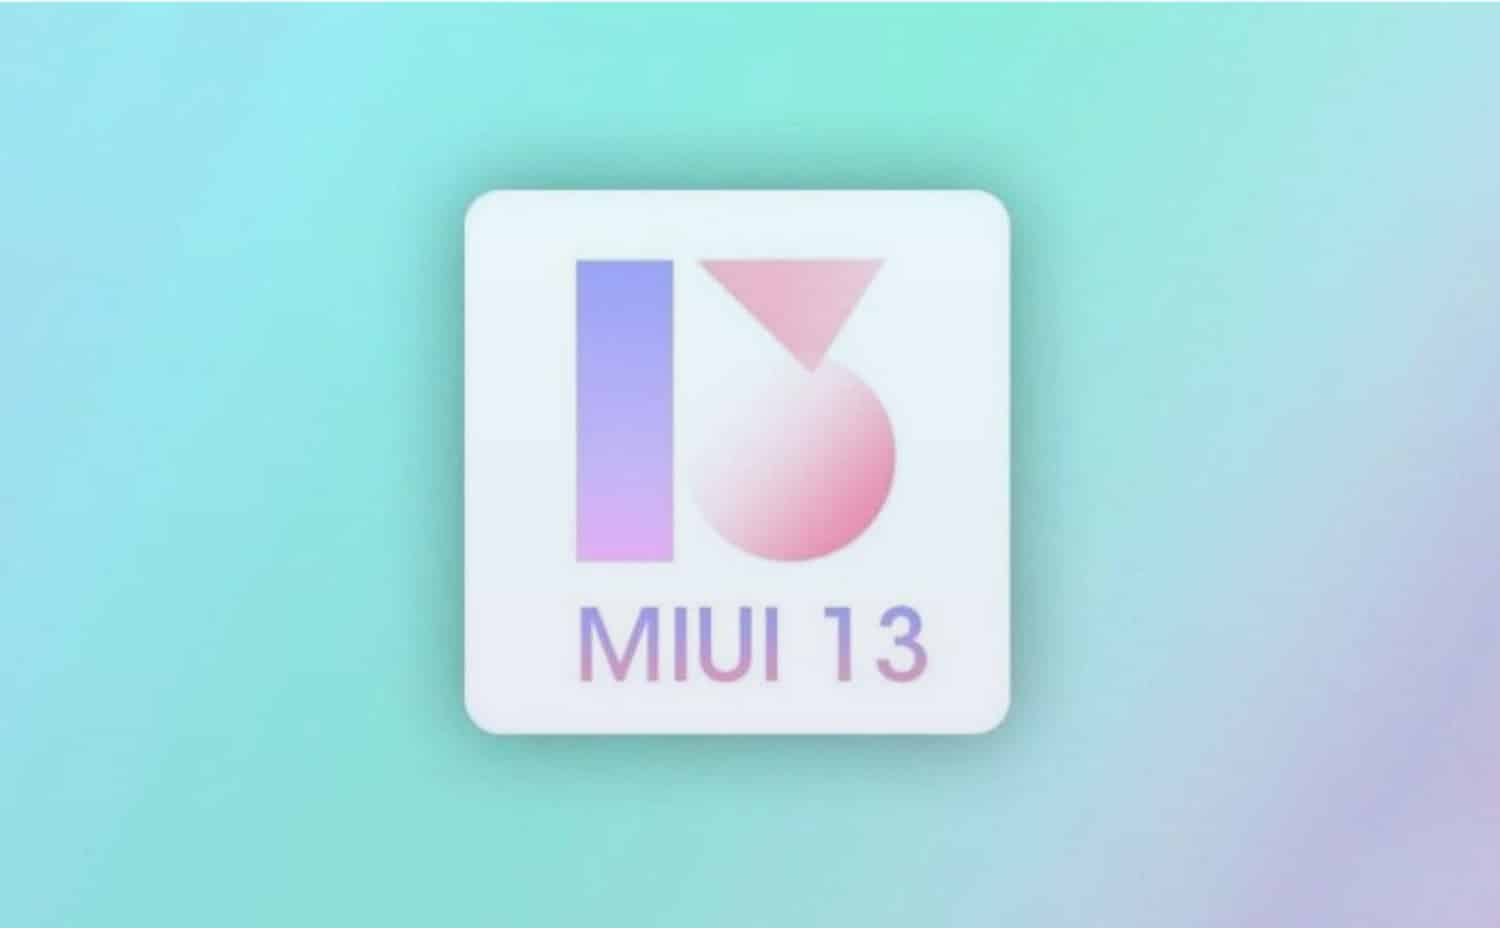 شاومي ستقوم بطرح واجهة MIUI 13 غدًا في الهند